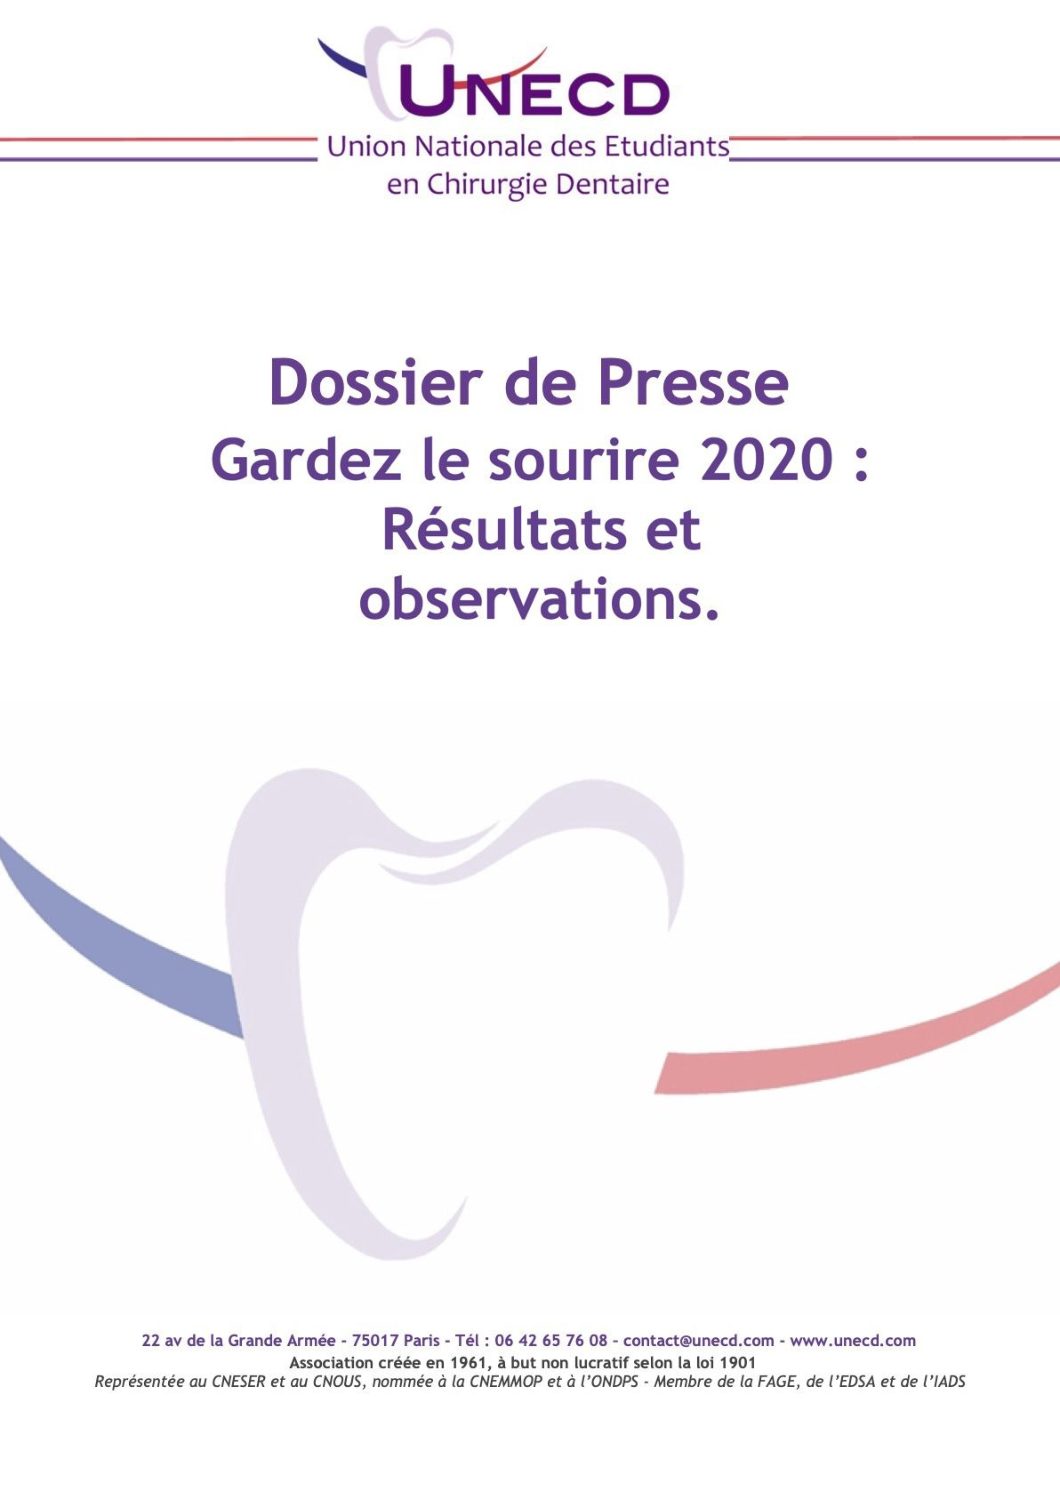 Dossiers de presse Union Nationale des Étudiants en Chirurgie Dentaire photo